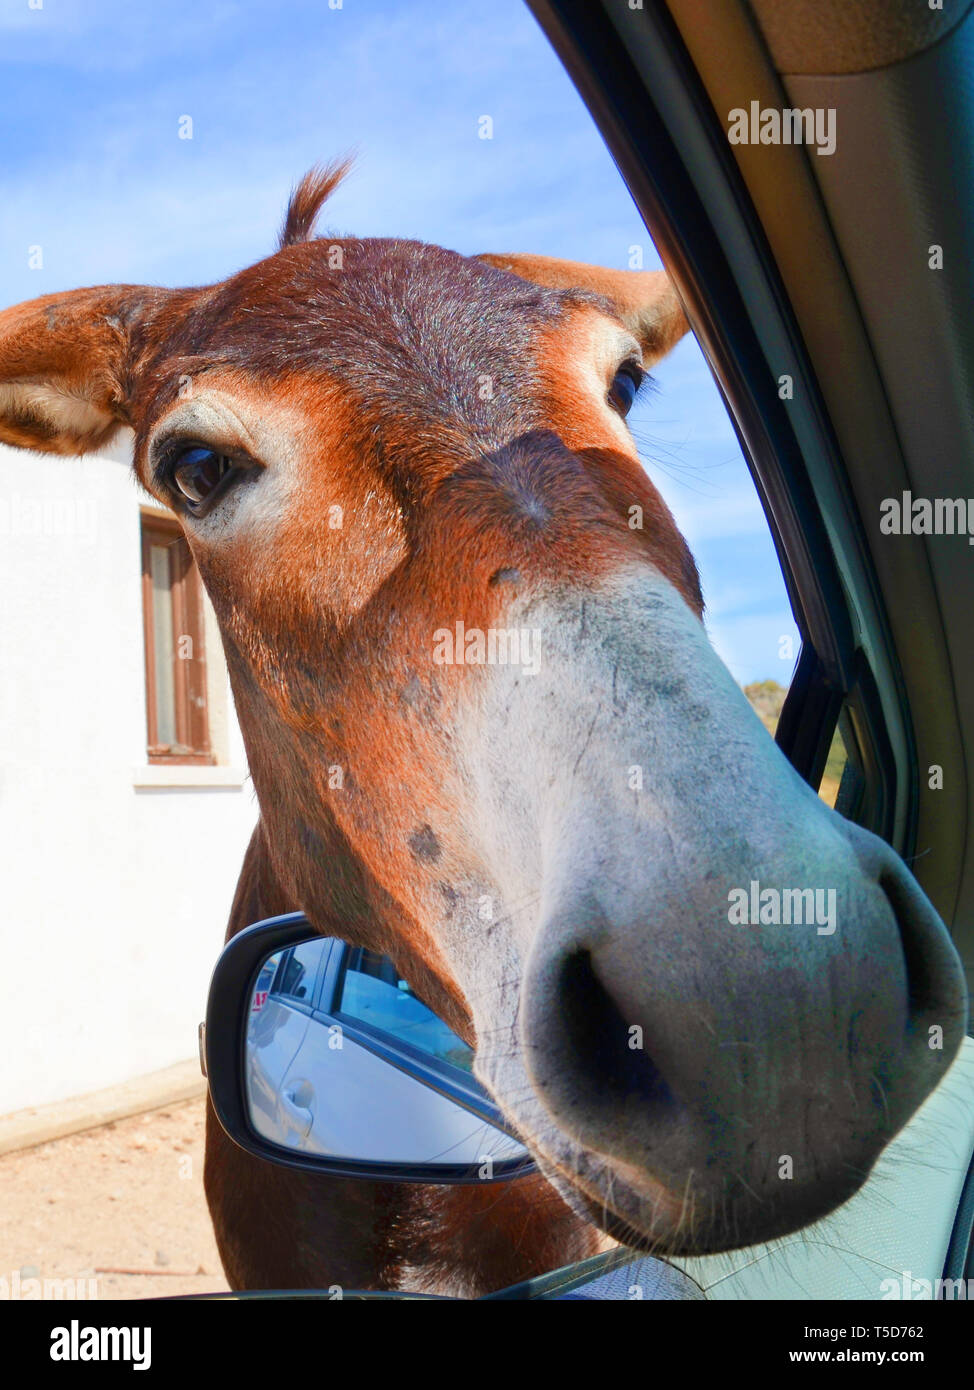 Adorabili foto verticale della testa di asini cercando in auto attraverso apre la finestra auto. Prese nella penisola di Karpaz, turca di Cipro nord. Asini selvatici sono popolari attrazioni locali. Foto Stock